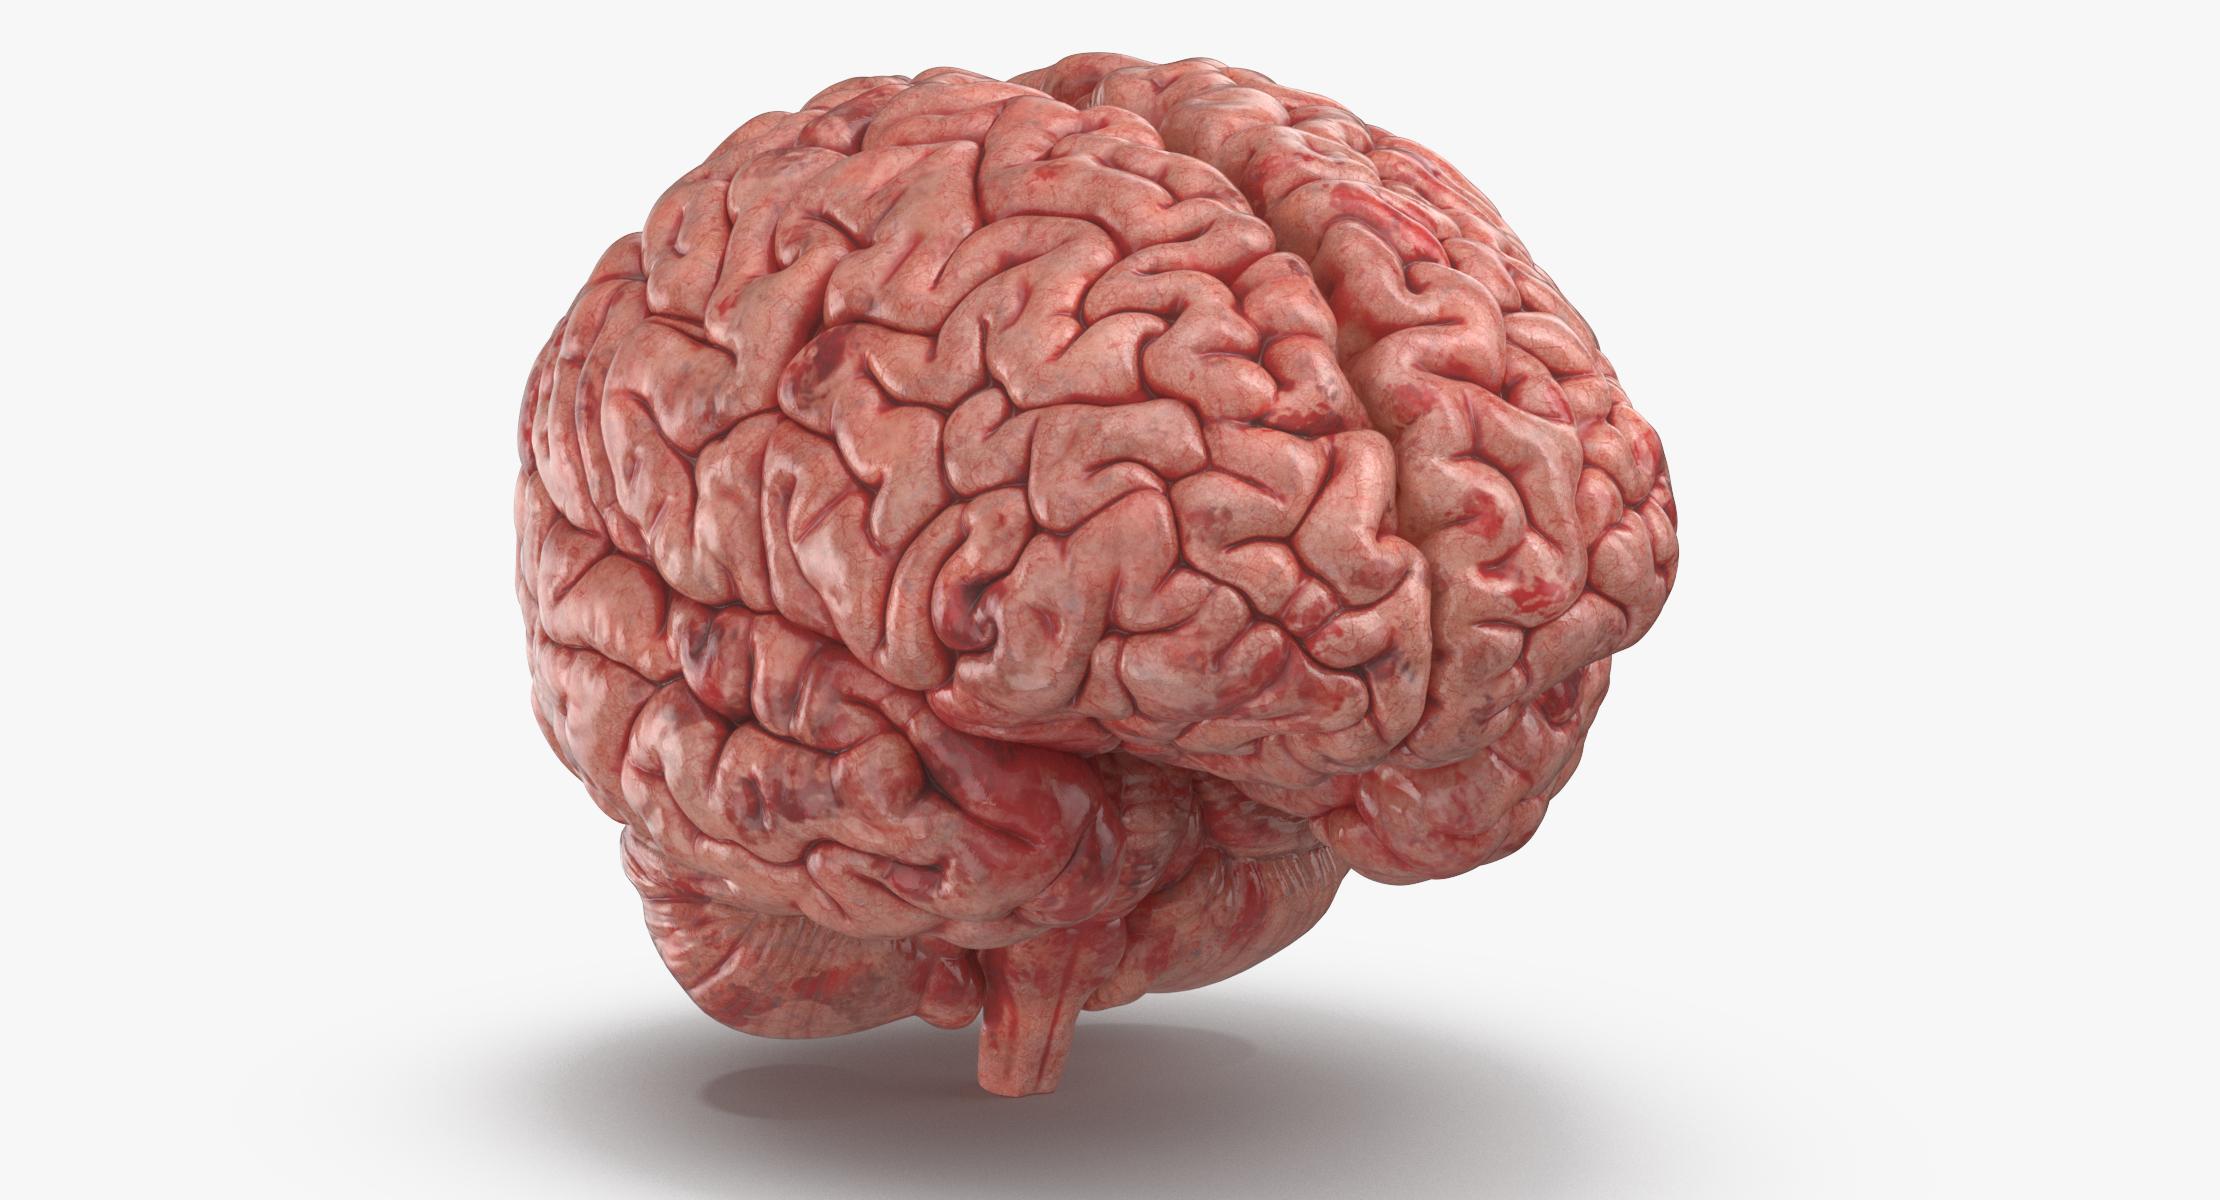 Картинка про мозг